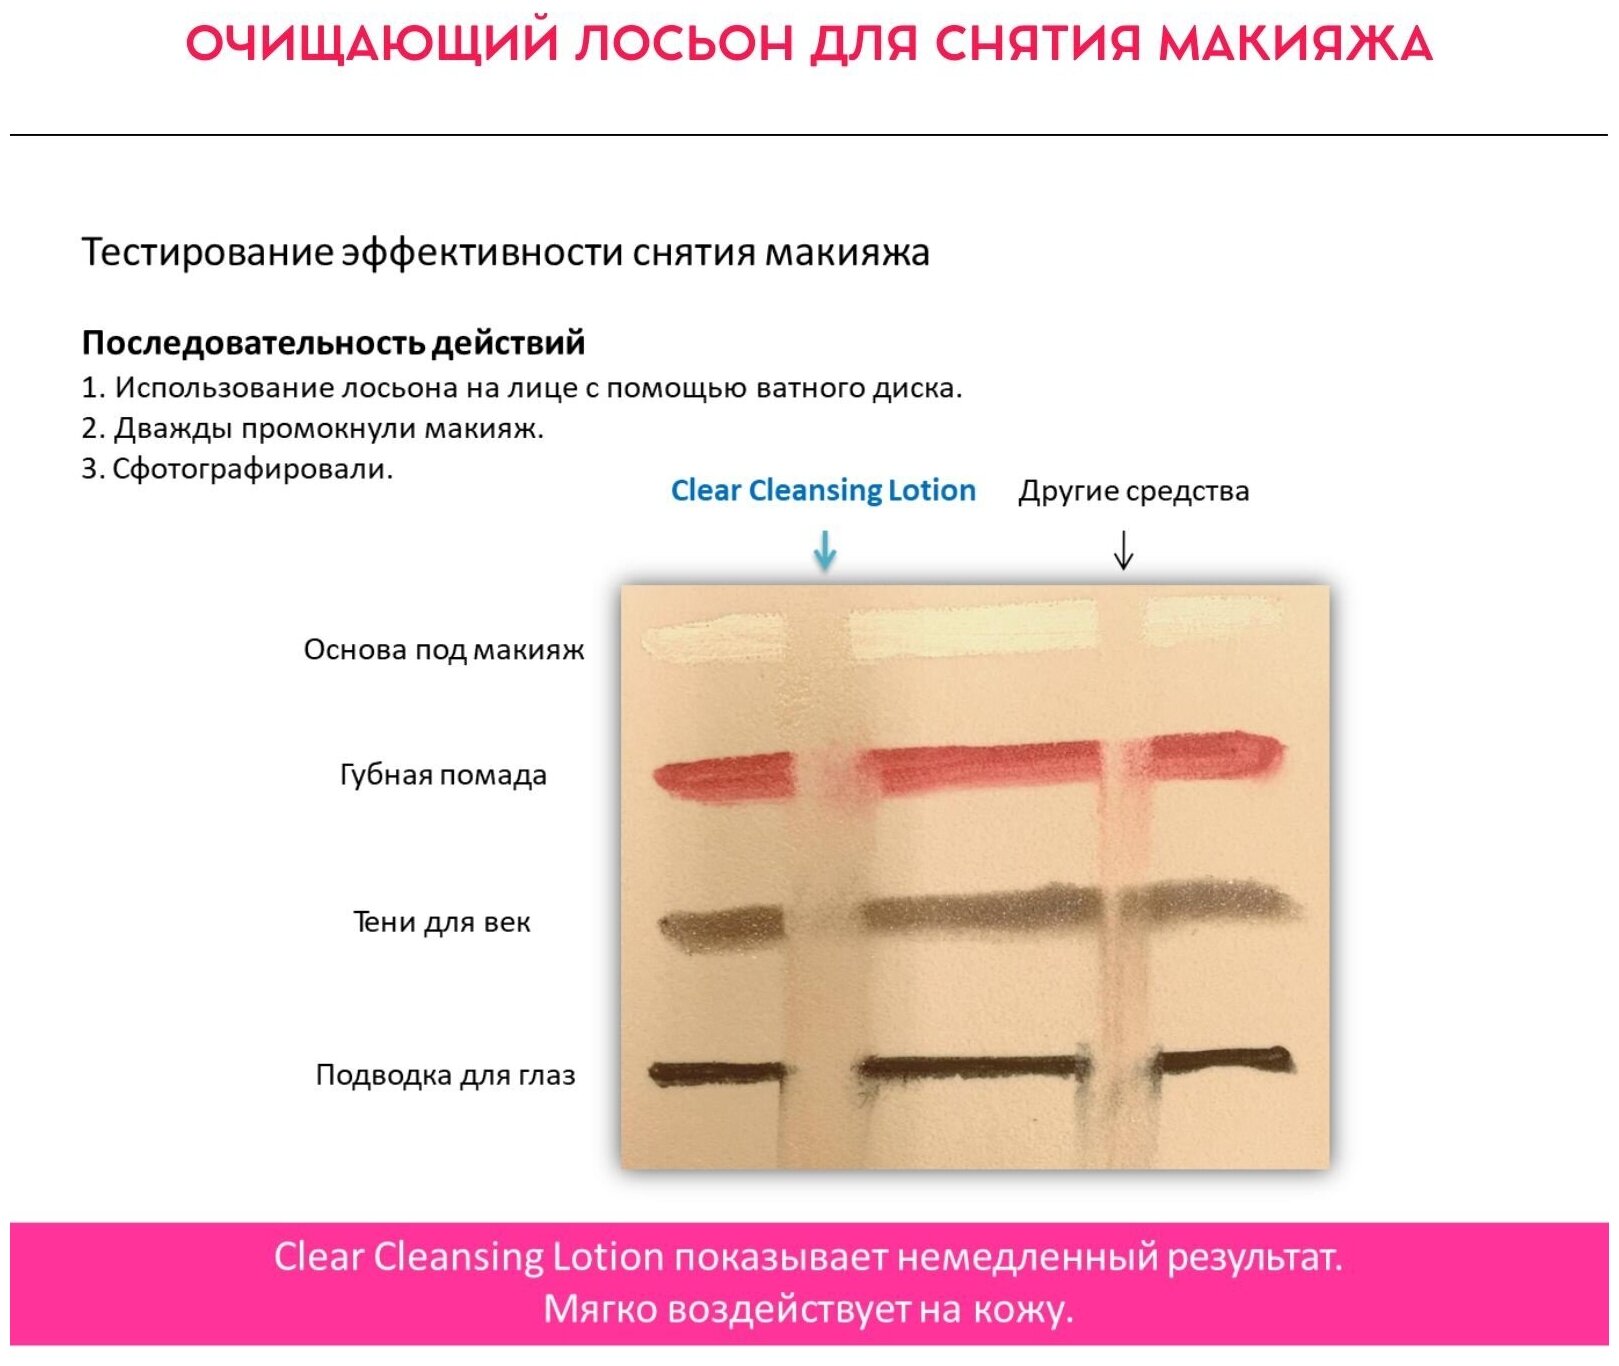 Momotani Clear Cleansing Lotion Очищающий лосьон для снятия макияжа, 390 мл